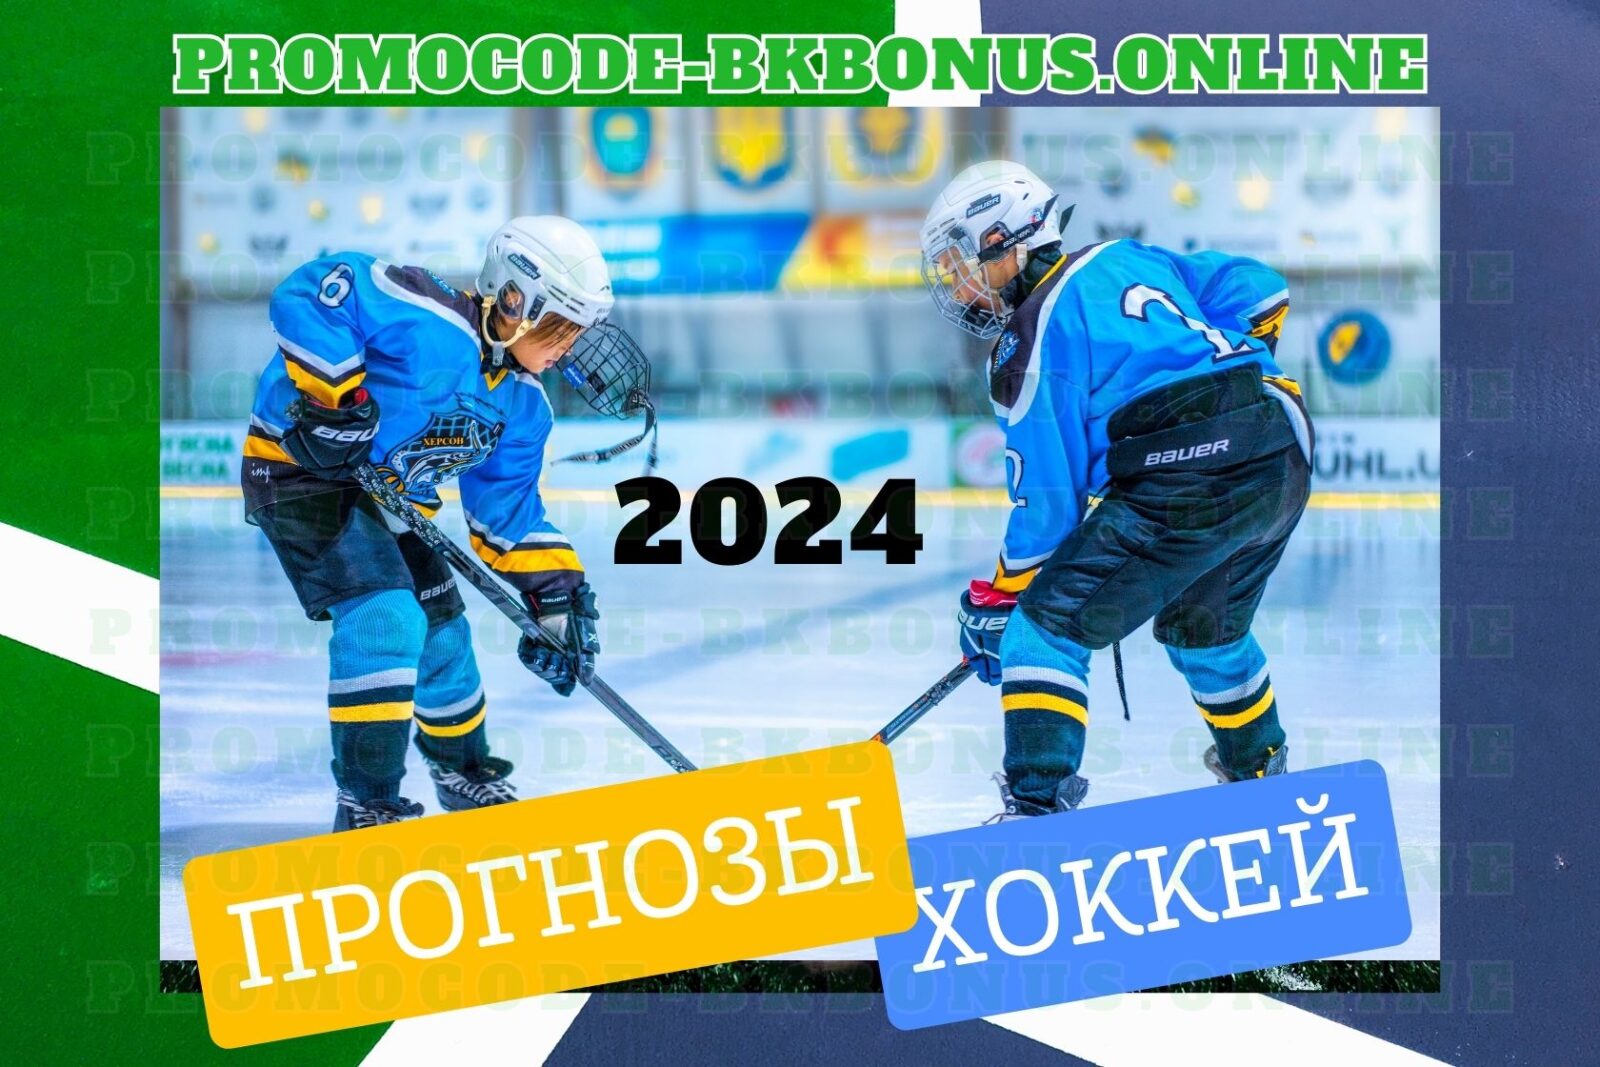 Прогнозы на хоккейные события в 2024 году.